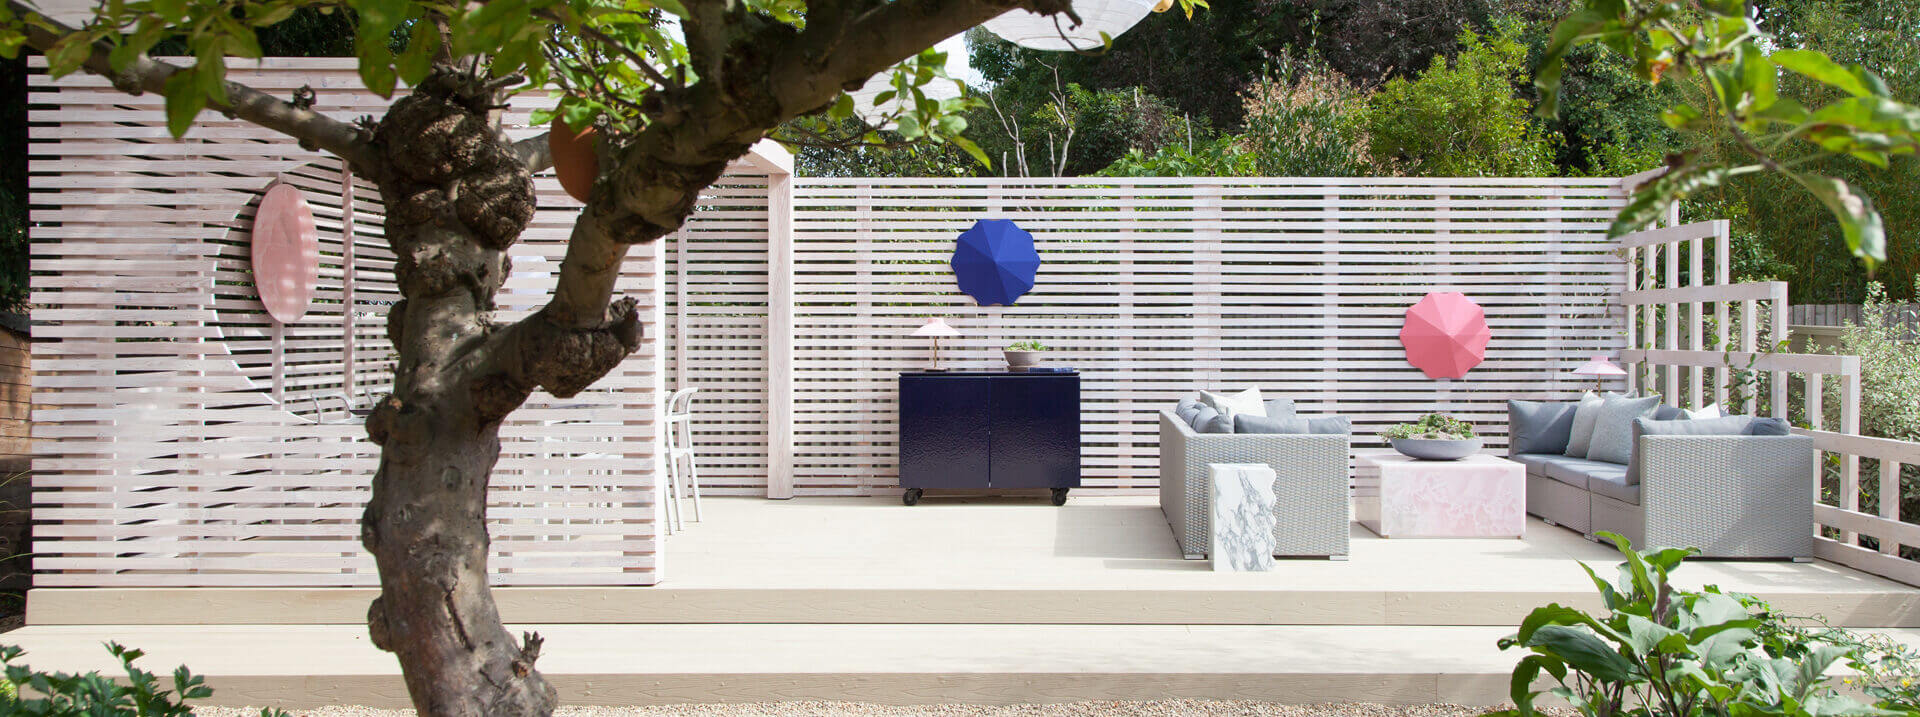 HD Deck® Pro installed in creative garden patio design